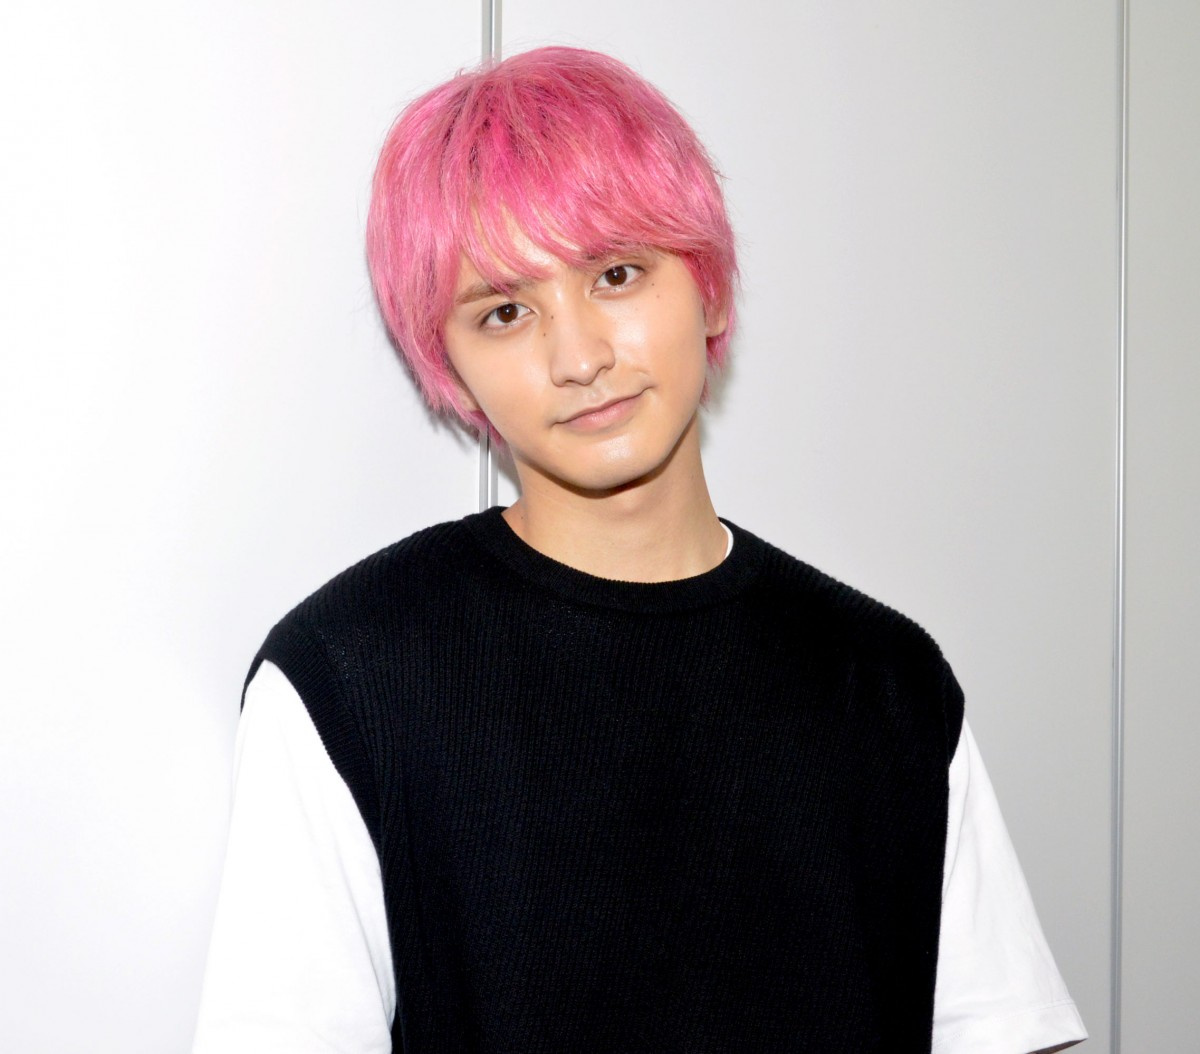 ピンク髪 で注目の瀬戸利樹 同世代俳優たちから刺激 負けたくない Oricon News